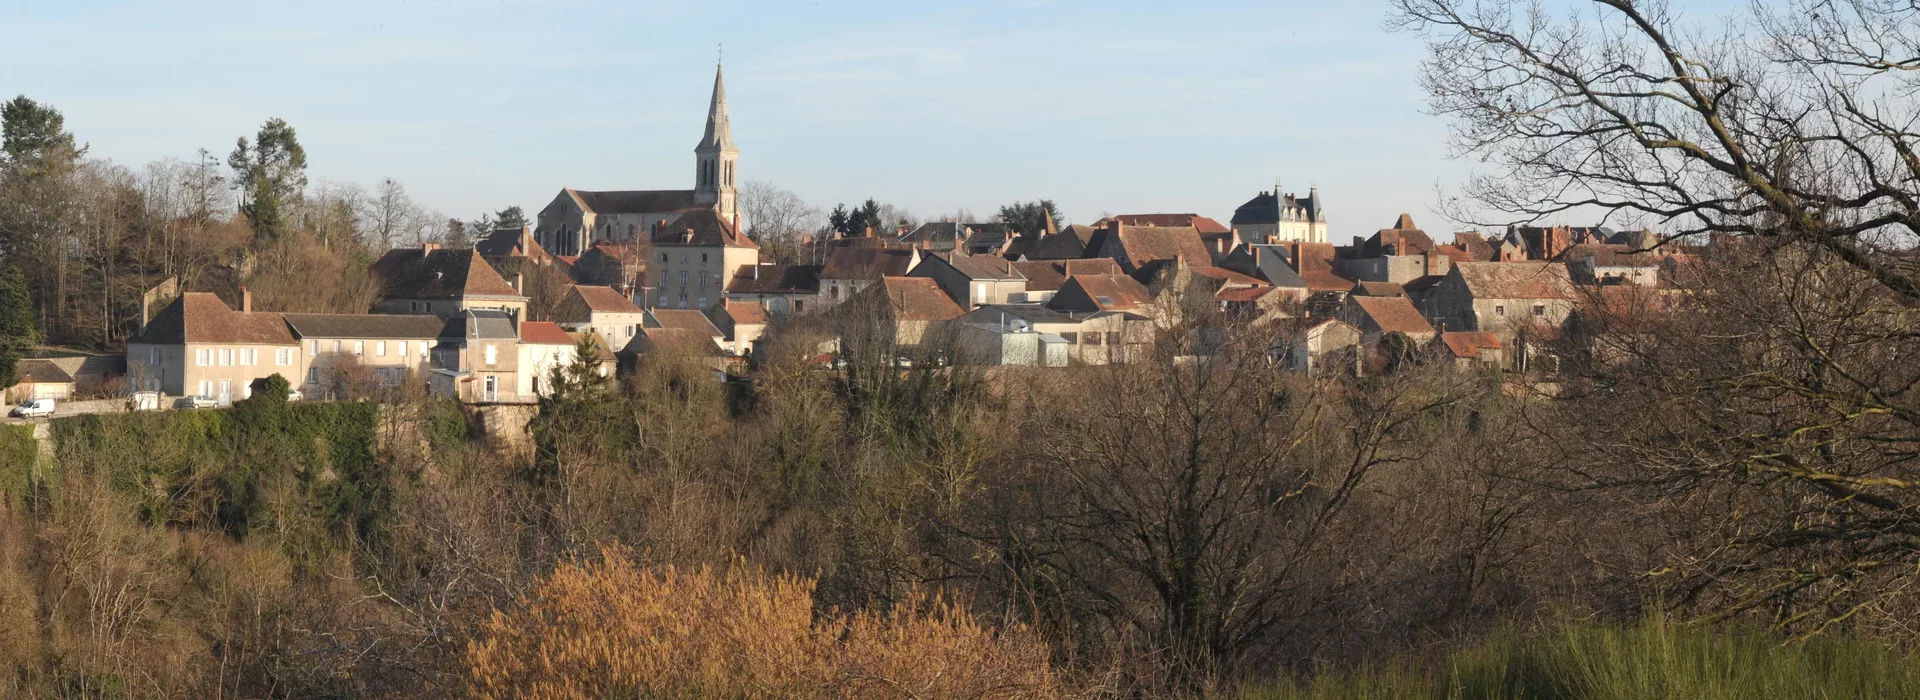 Site officiel de la commune de Chantelle dans le Bourbonnais